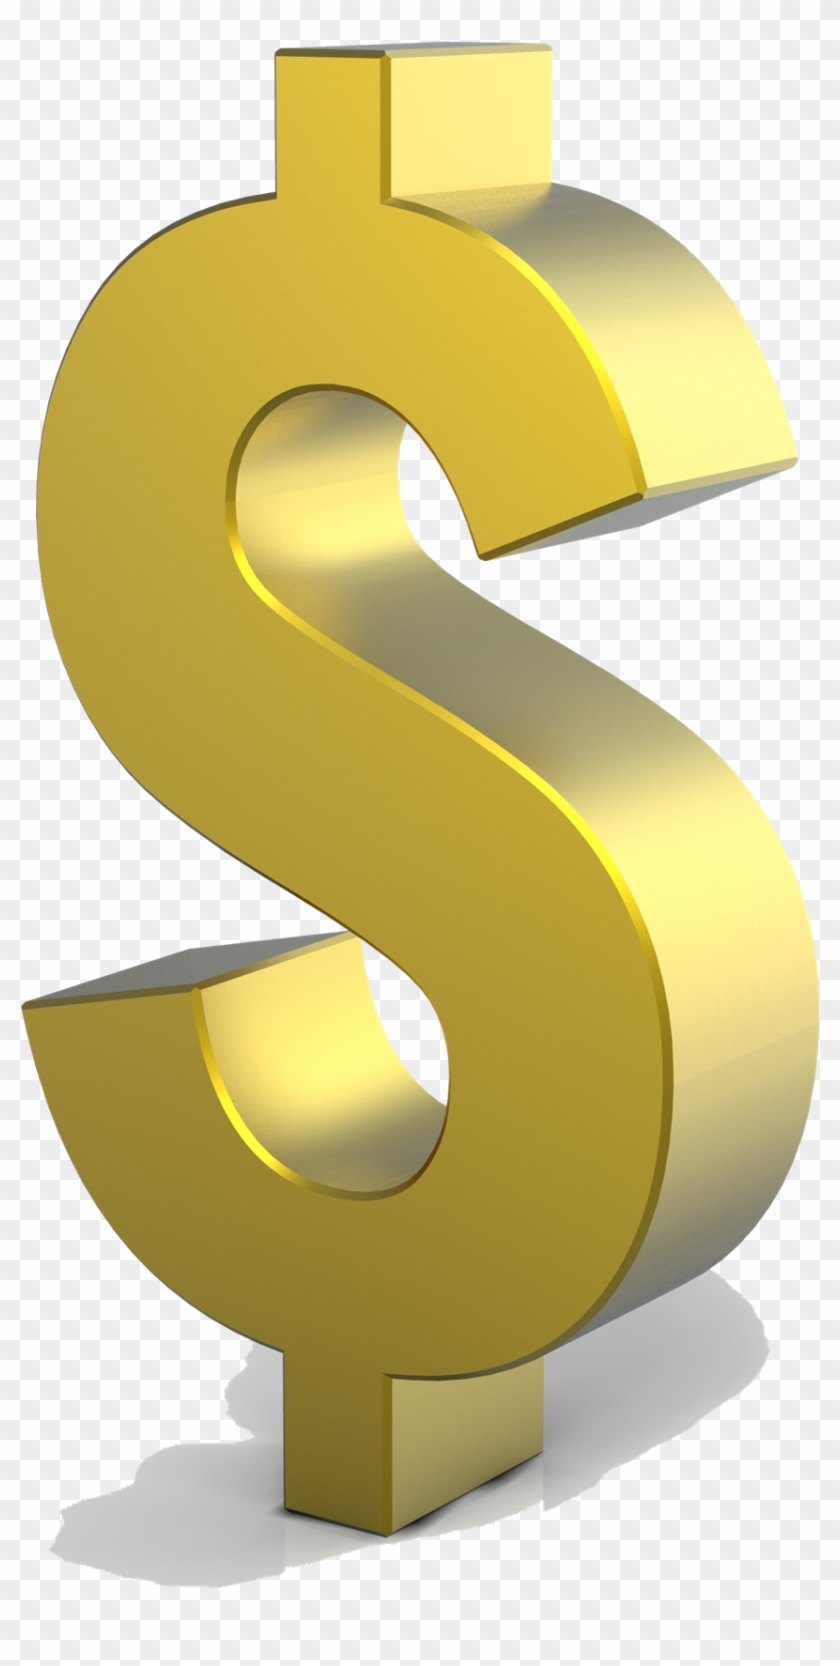 Download Dollar Sign Symbols Png Transparent Images - Gold Dollar Sign Png #350909